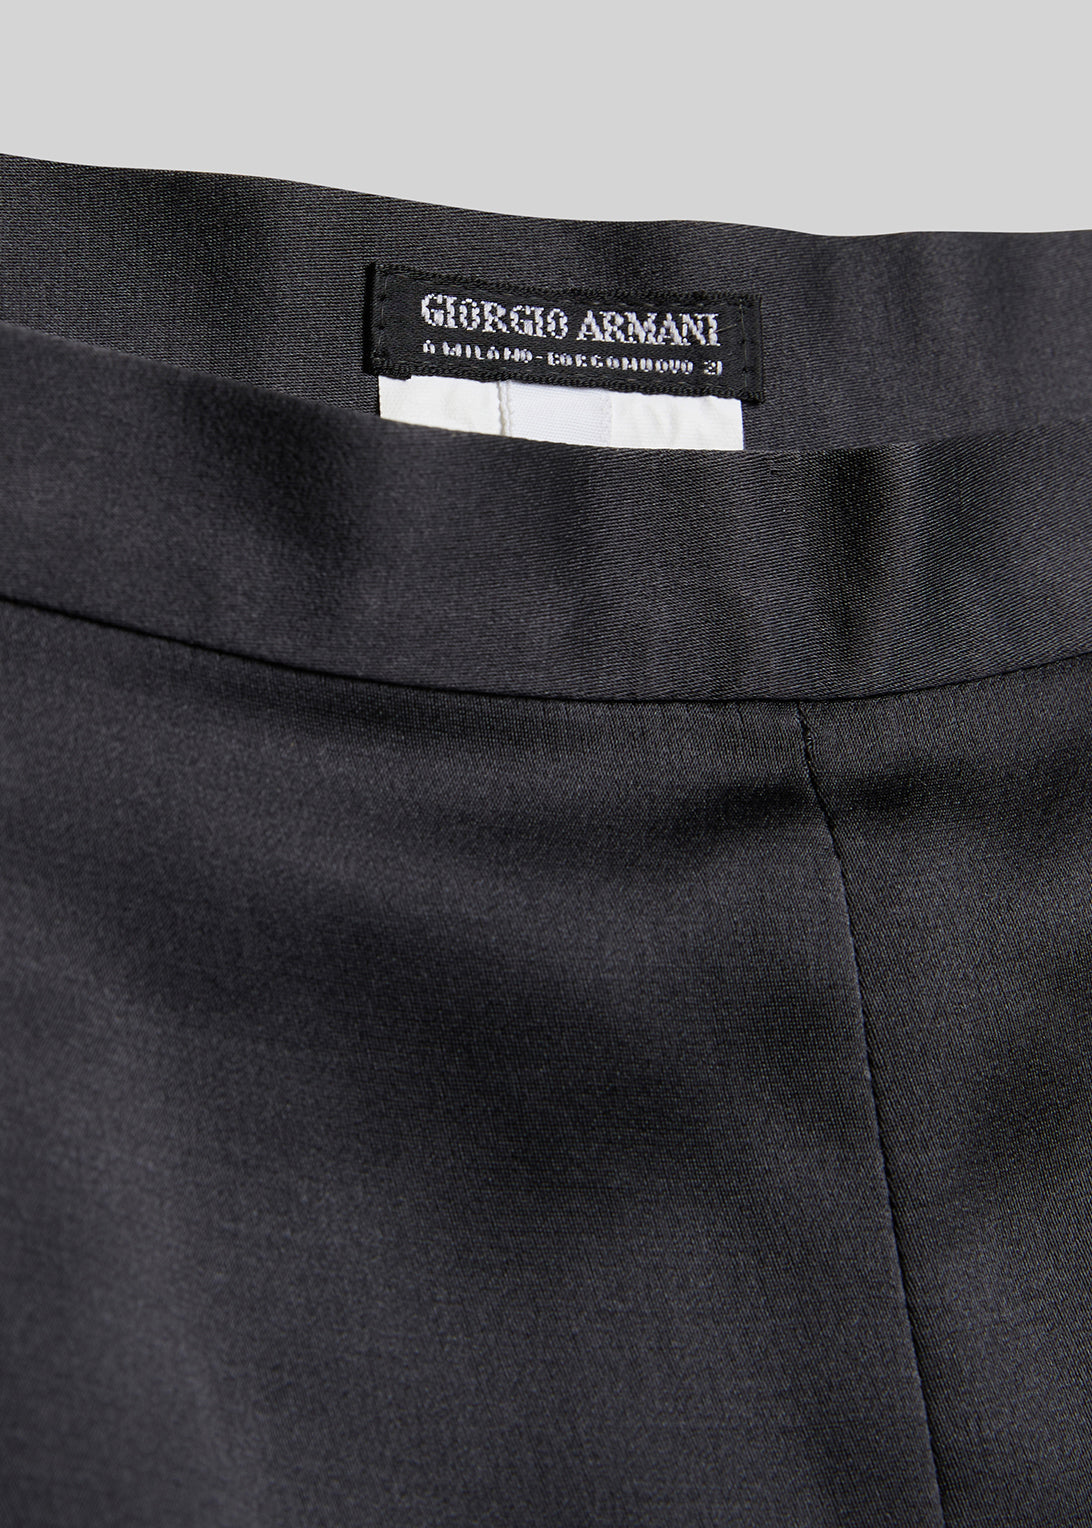 Giorgio Armani Vicuña one-pleat trousers in pure vicuña chevron fabric | GIORGIO  ARMANI Man